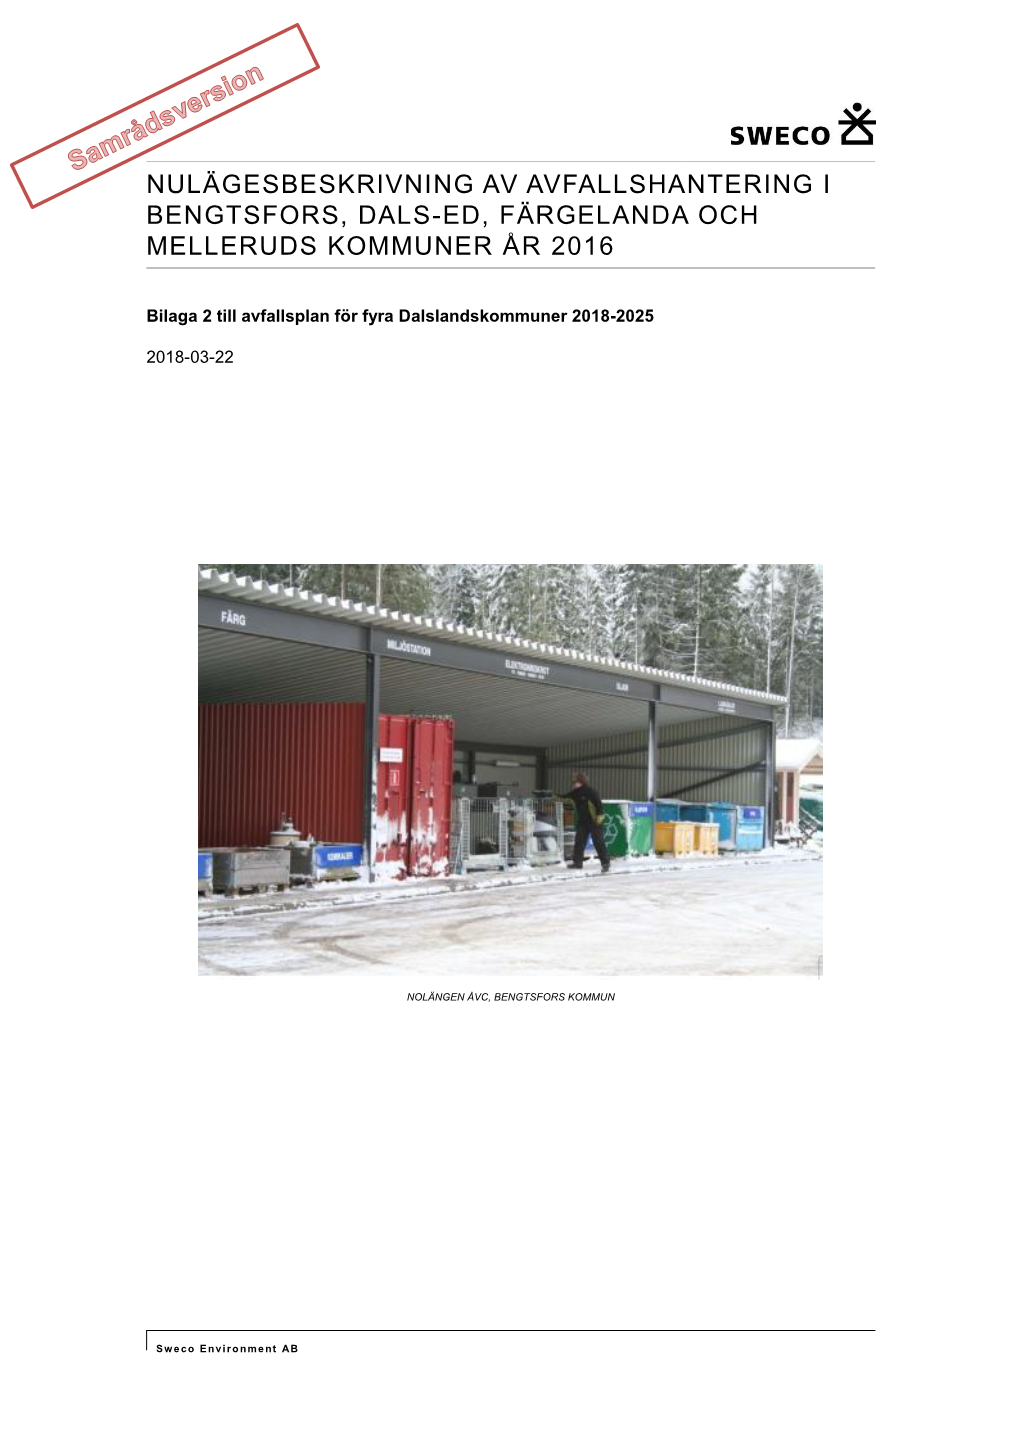 Nulägesbeskrivning Av Avfallshantering I Bengtsfors, Dals-Ed, Färgelanda Och Melleruds Kommuner År 2016